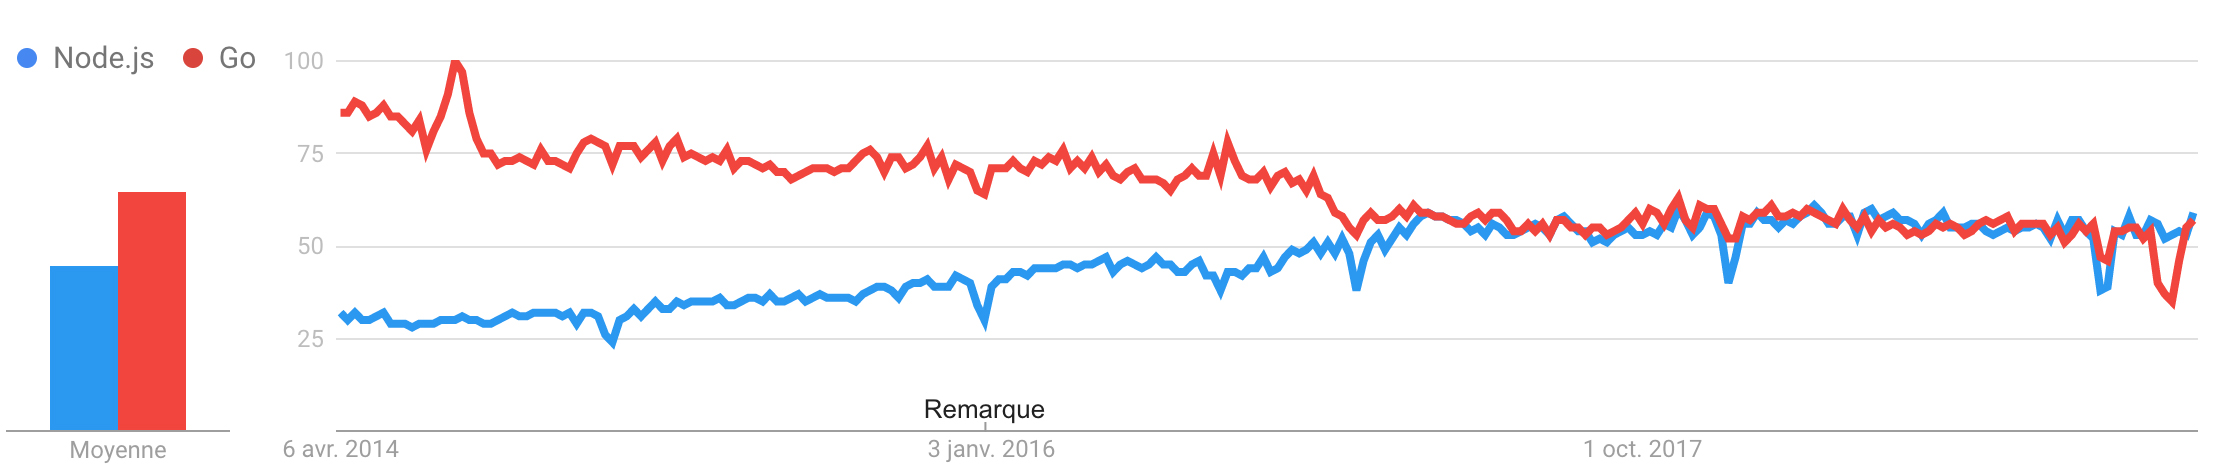 Node.js vs Go Google Trend